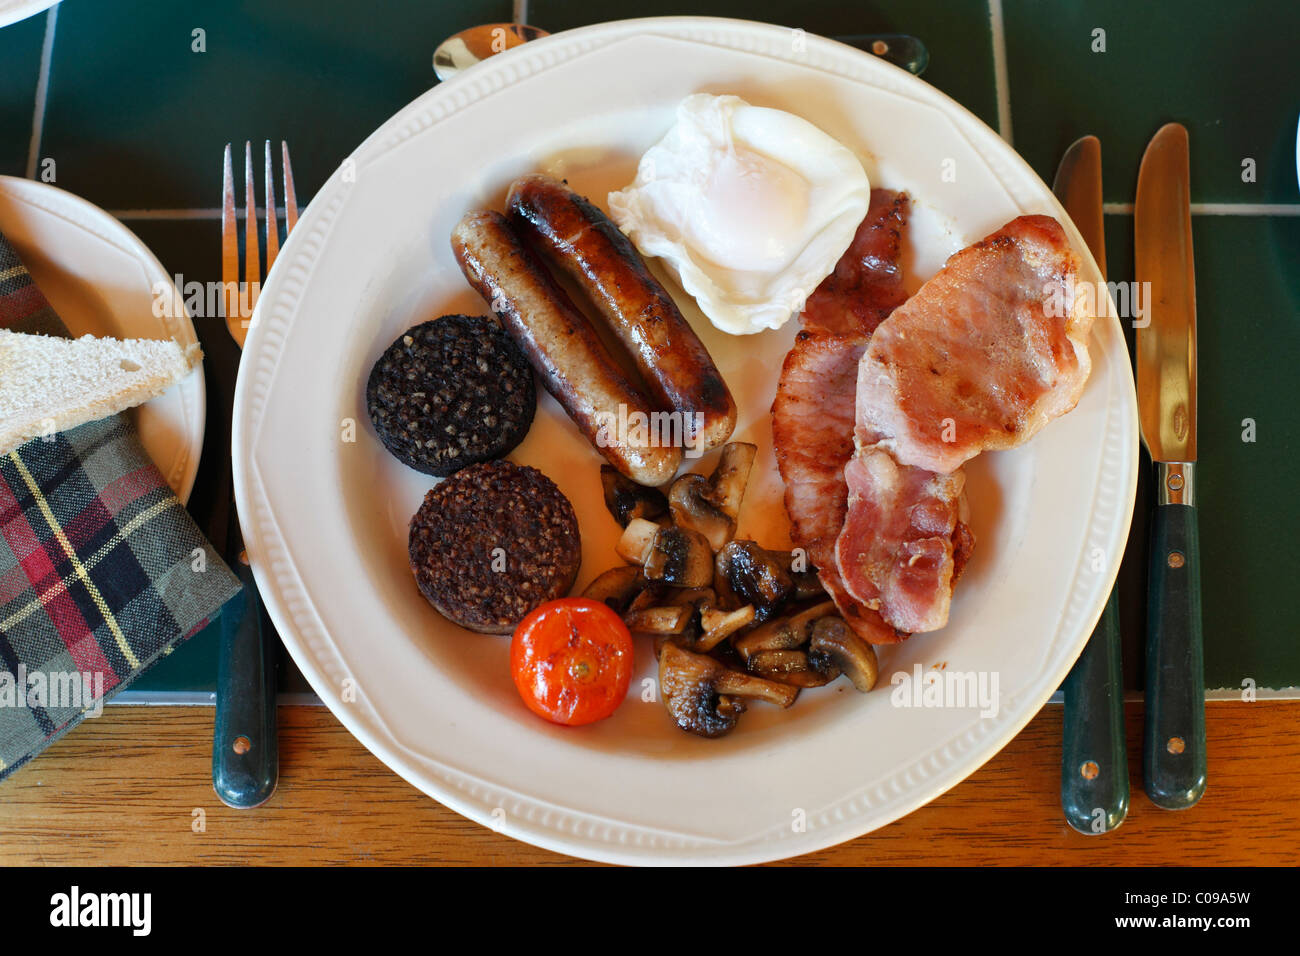 Desayuno irlandés completo, el antiguo presbiterio Bed and Breakfast, Castletownbere, península de Beara, condado, Irlanda, Islas Británicas Foto de stock